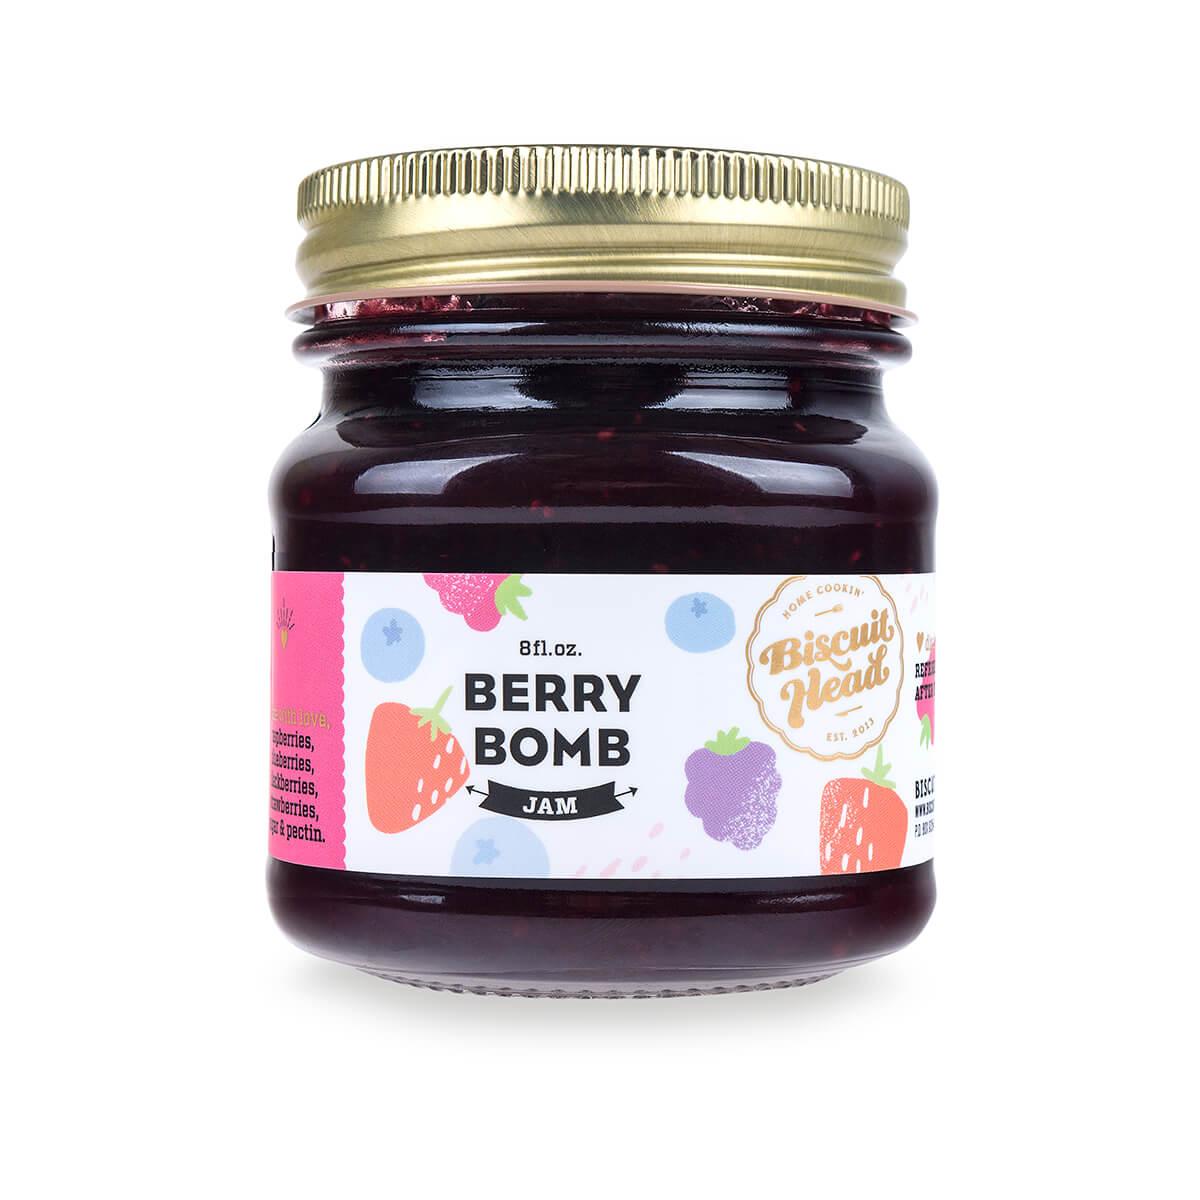  Berry Bomb Jam